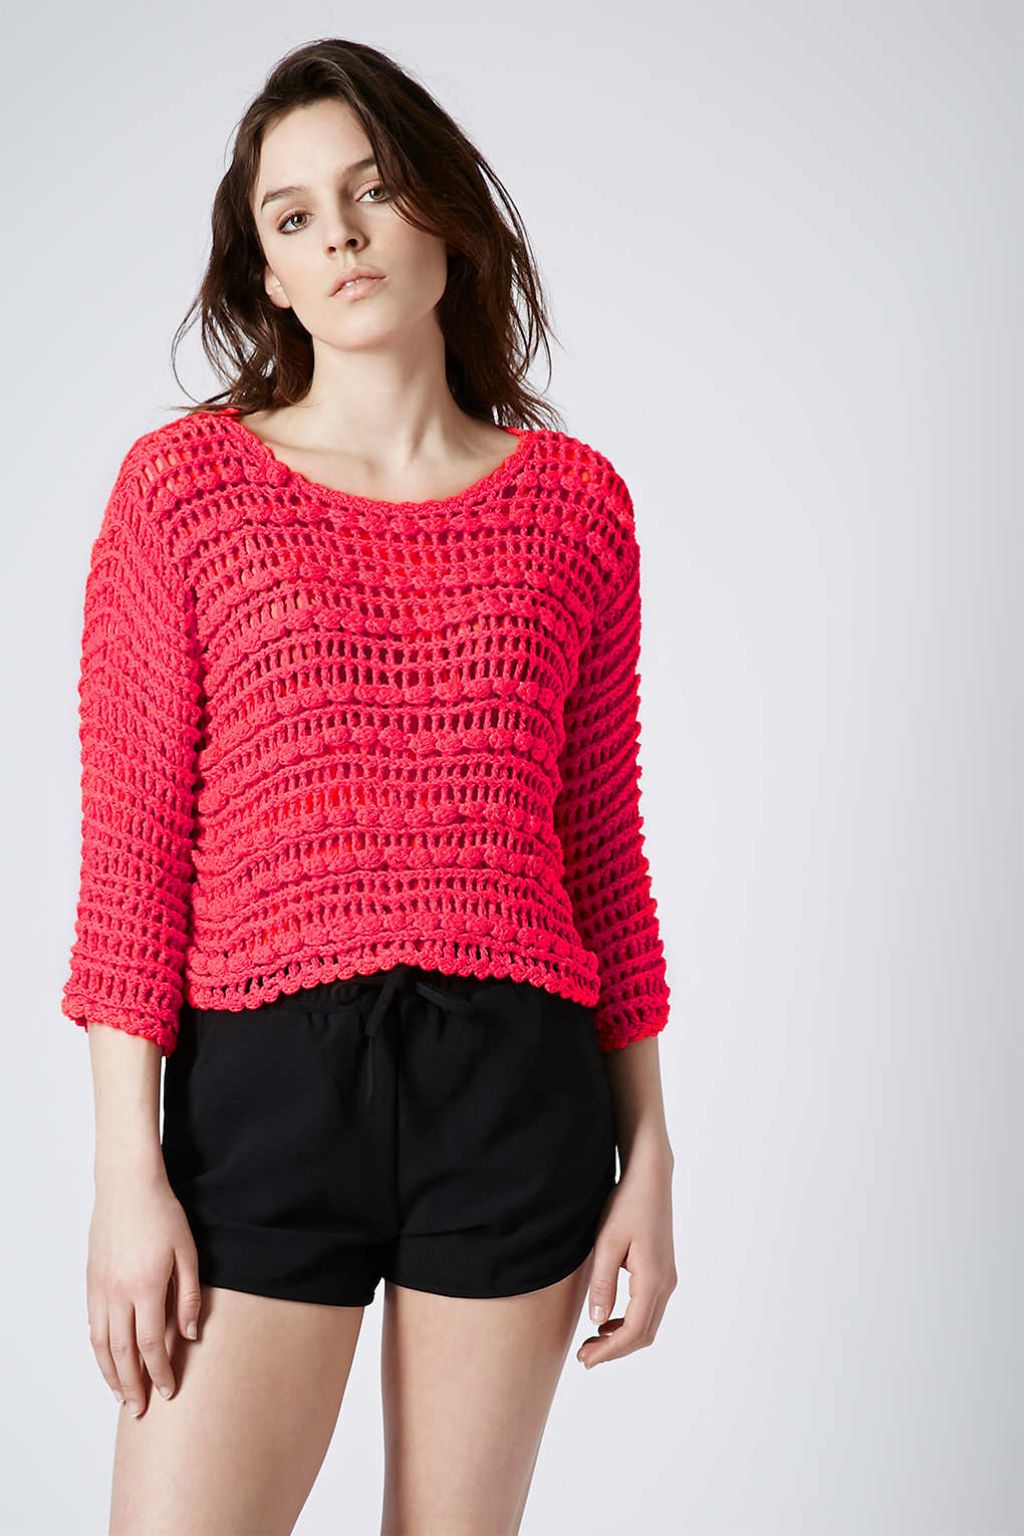 Modni izdelek dneva: pulover